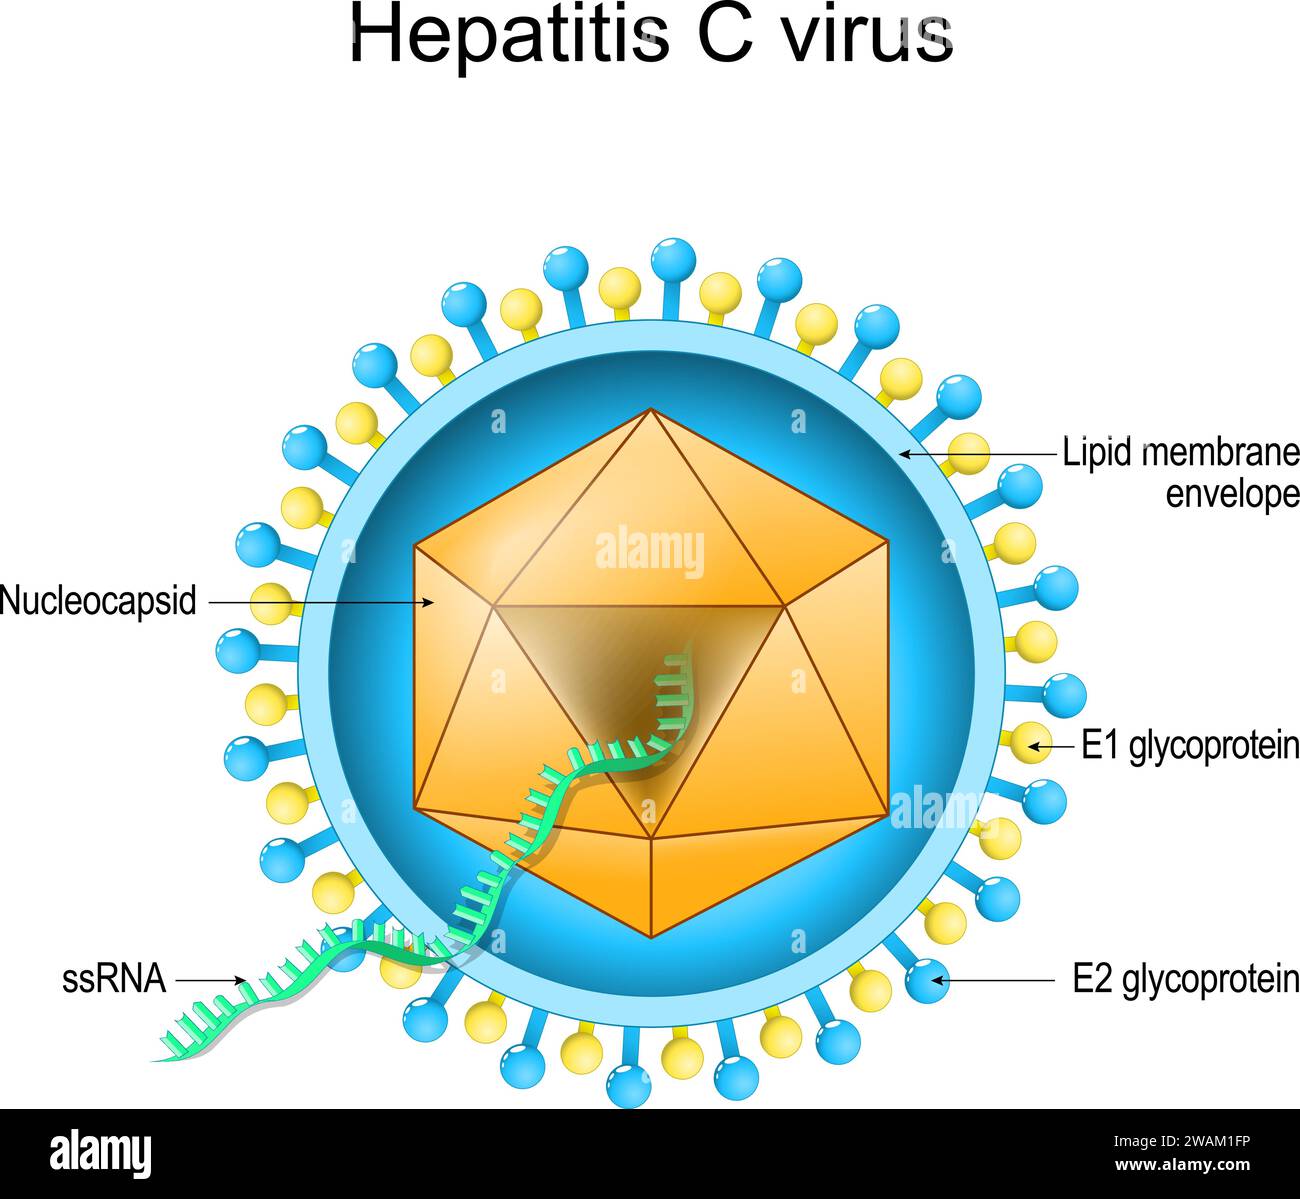 Structure du virus de l'hépatite C. Anatomie du virion. Maladie infectieuse du foie due au VHC. Hépatite virale. Diagramme vectoriel Illustration de Vecteur